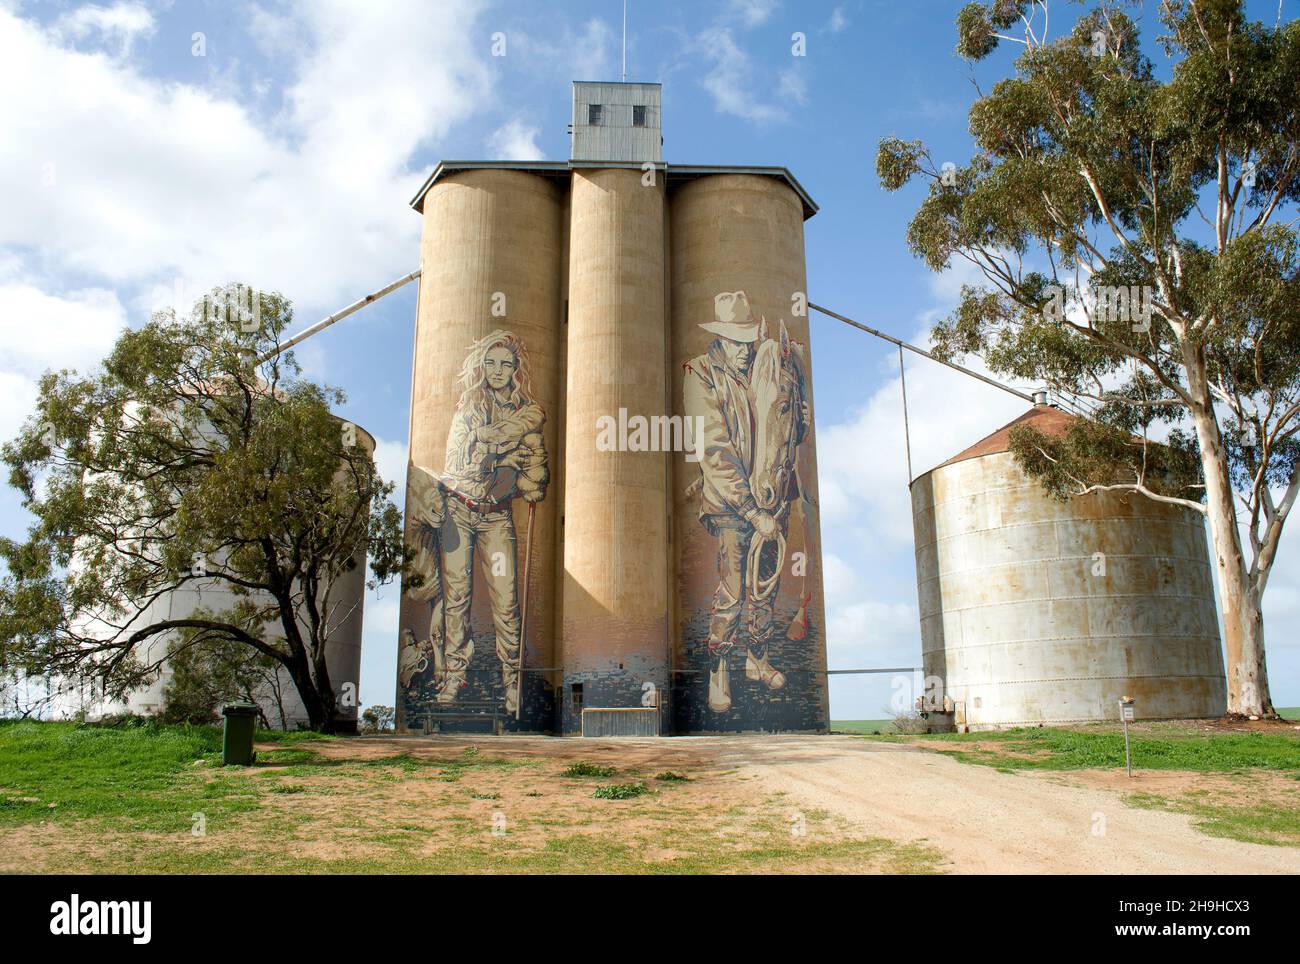 Le silo Rosebery, qui fait partie du Victoria Silo Art Trail, dans la région de Wimmera Mallee, à Victoria, en Australie Banque D'Images